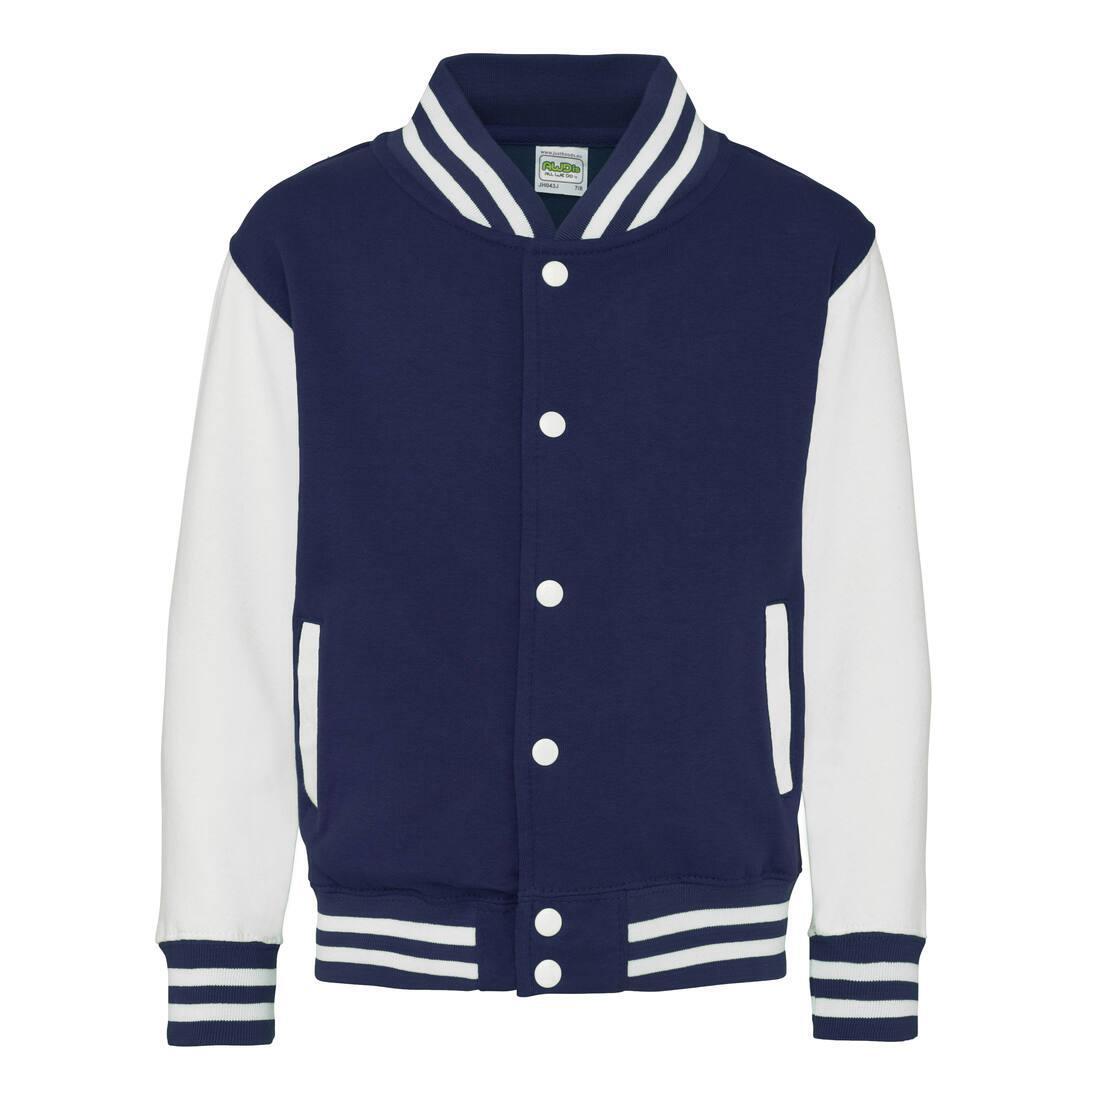 Kinder Varsity Jacket / jas oxford bluauw met wit bedrukken met tekst of logo